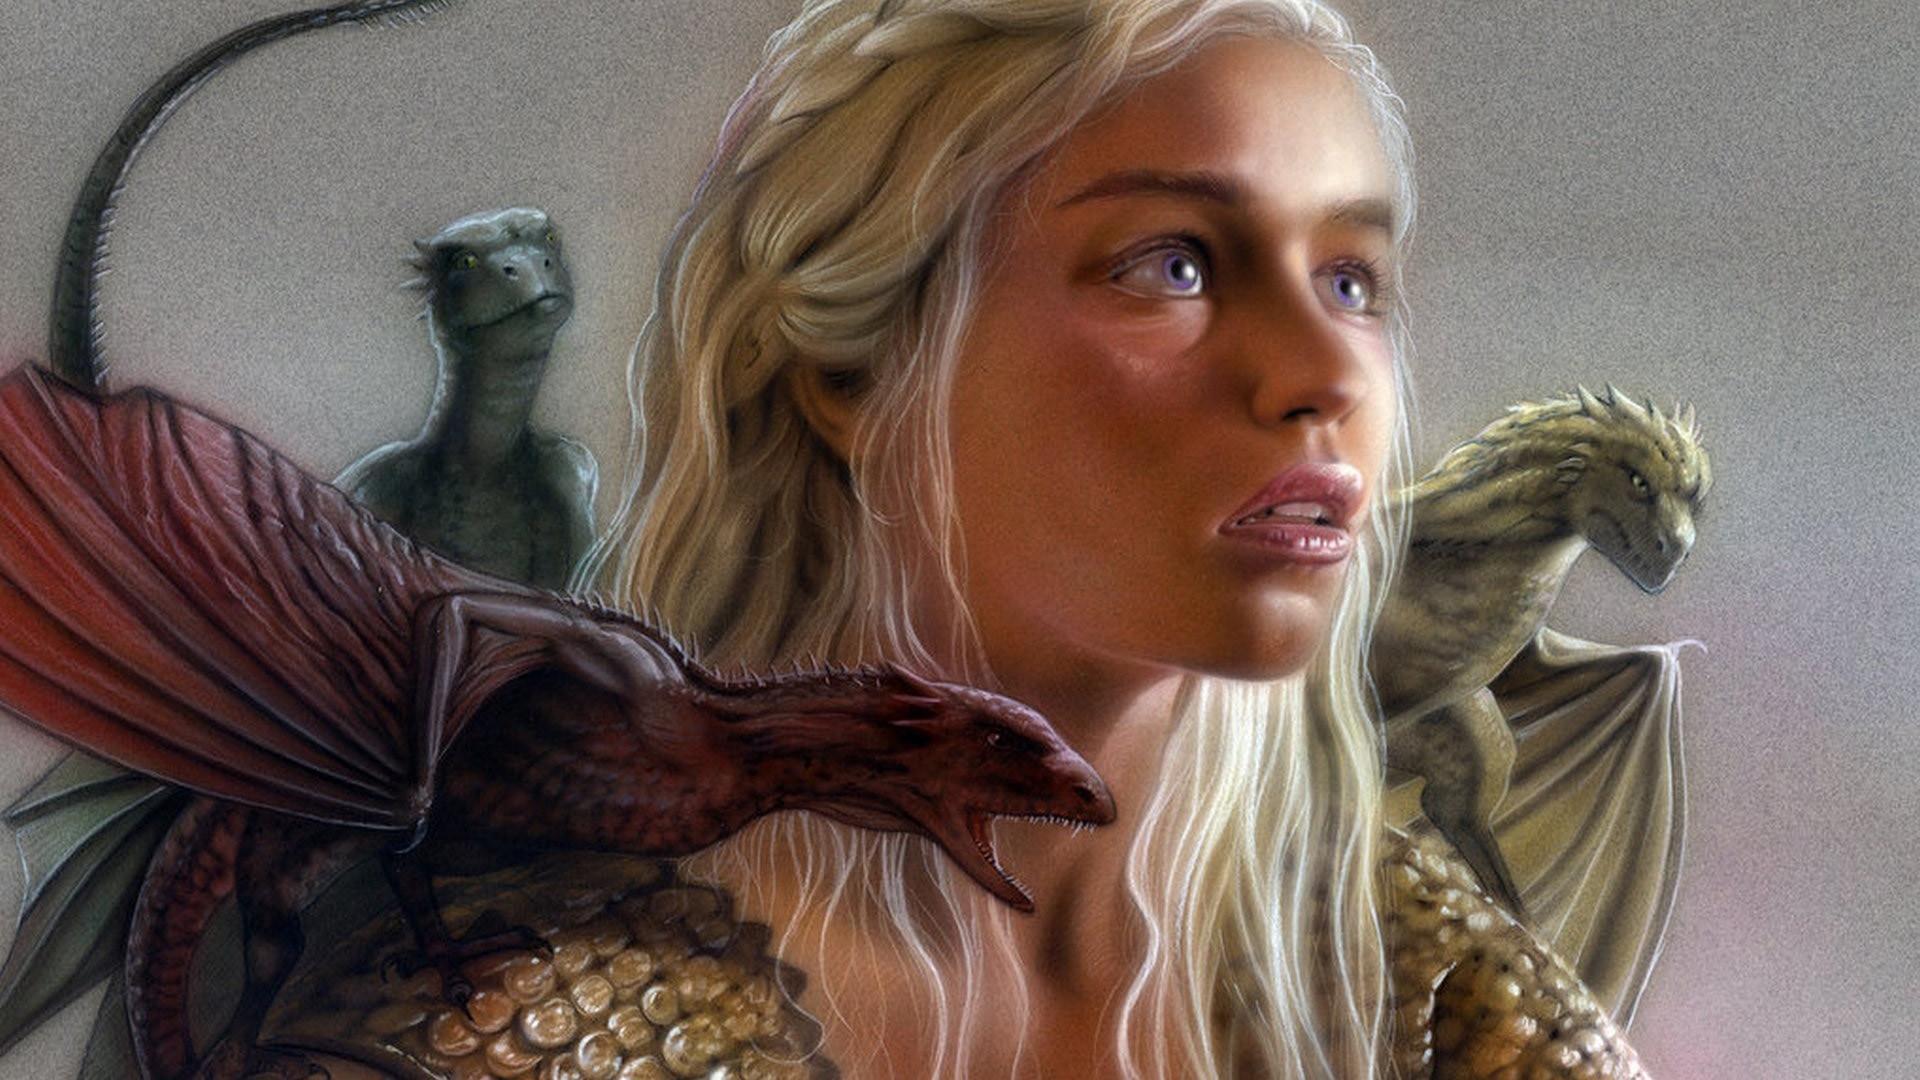 Download Daenerys Targaryen wallpapers for mobile phone free Daenerys  Targaryen HD pictures